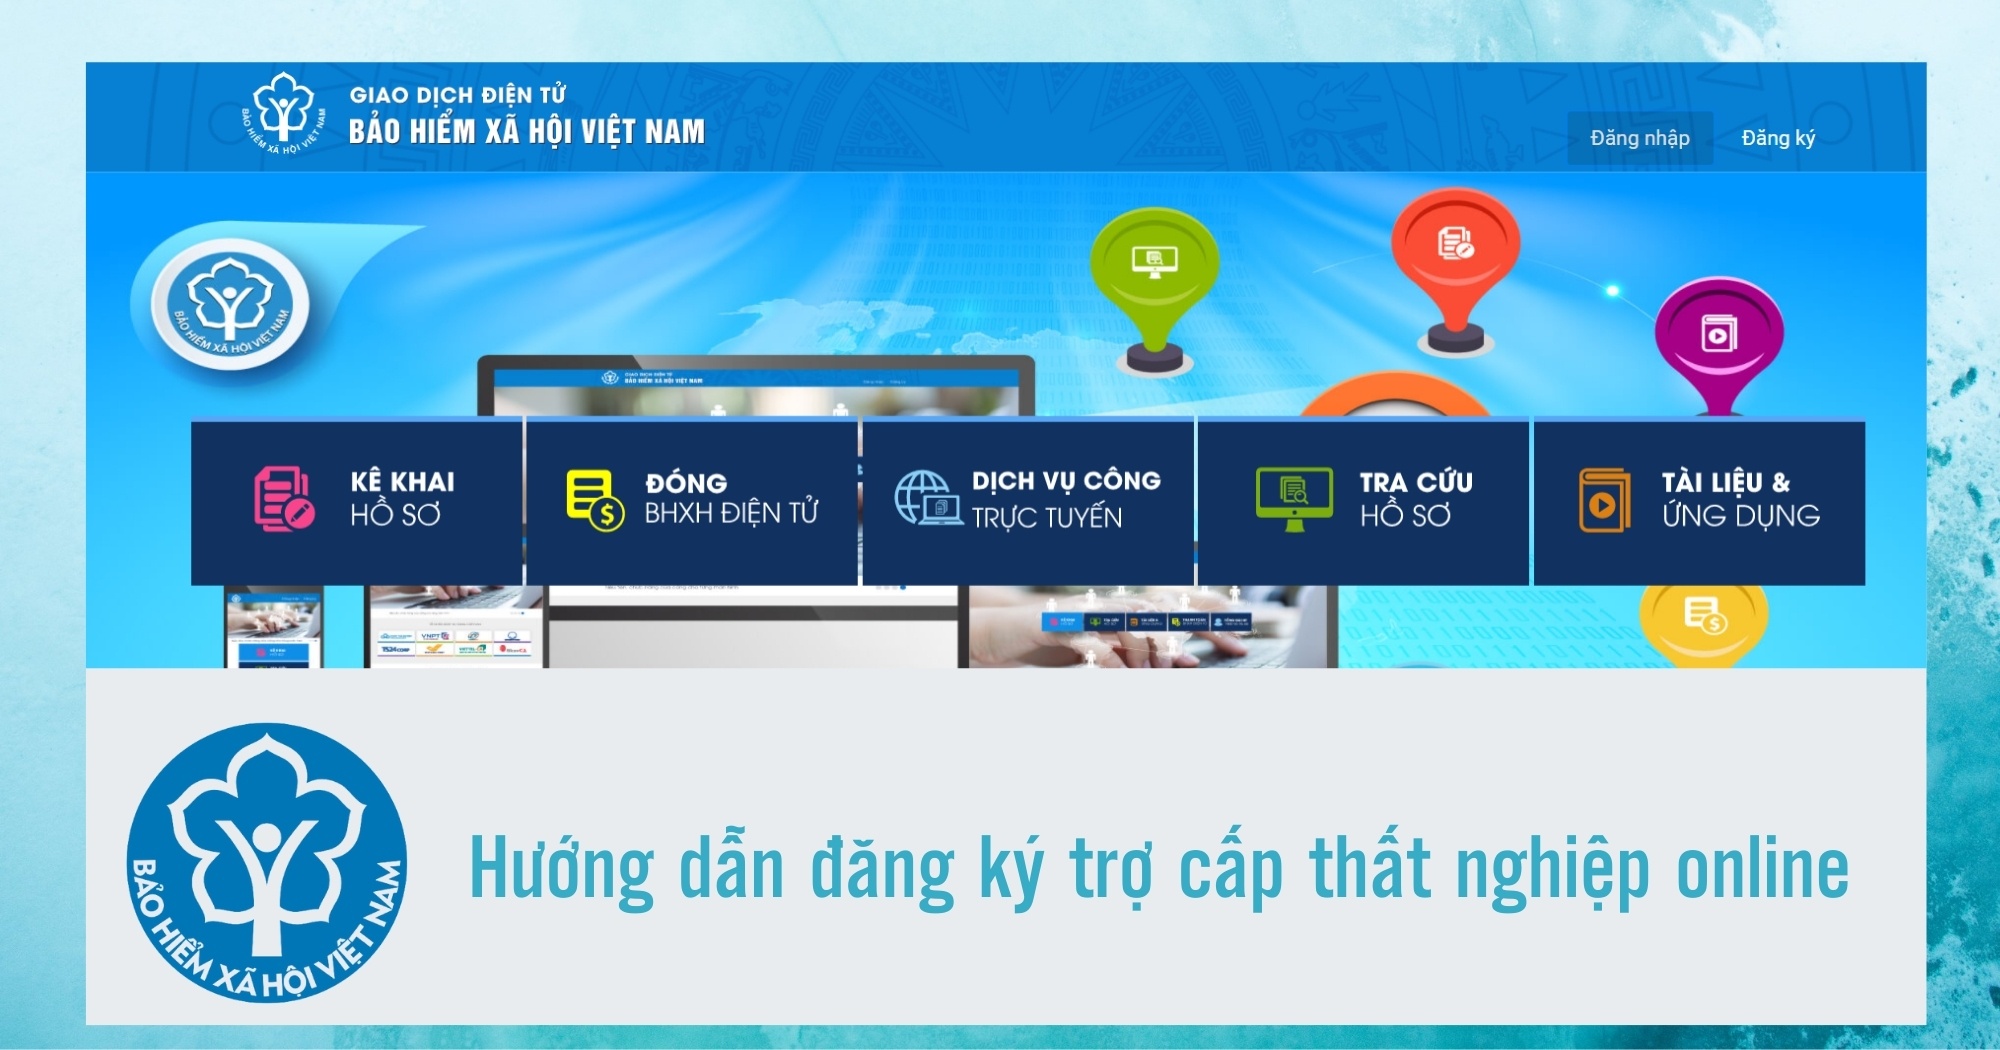 huong dan thu tuc huong tro cap that nghiep online